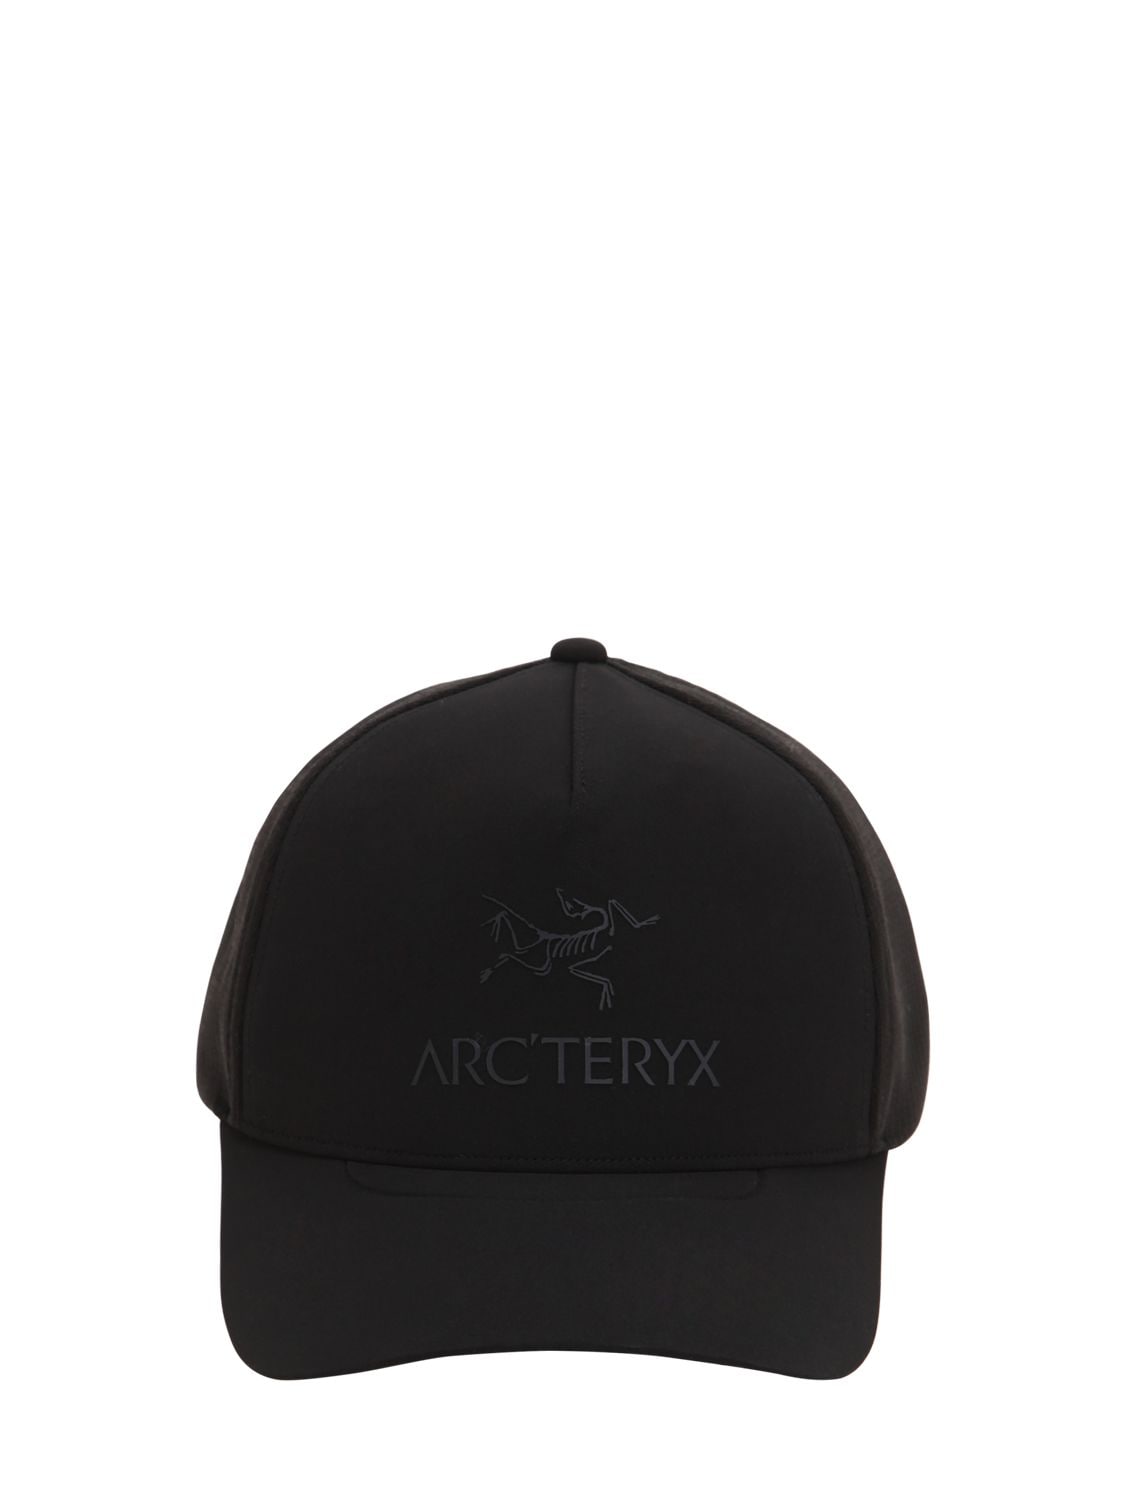 ARC'TERYX LOGO TECH TRUCKER HAT,74IDL3018-QKXBQ0S1